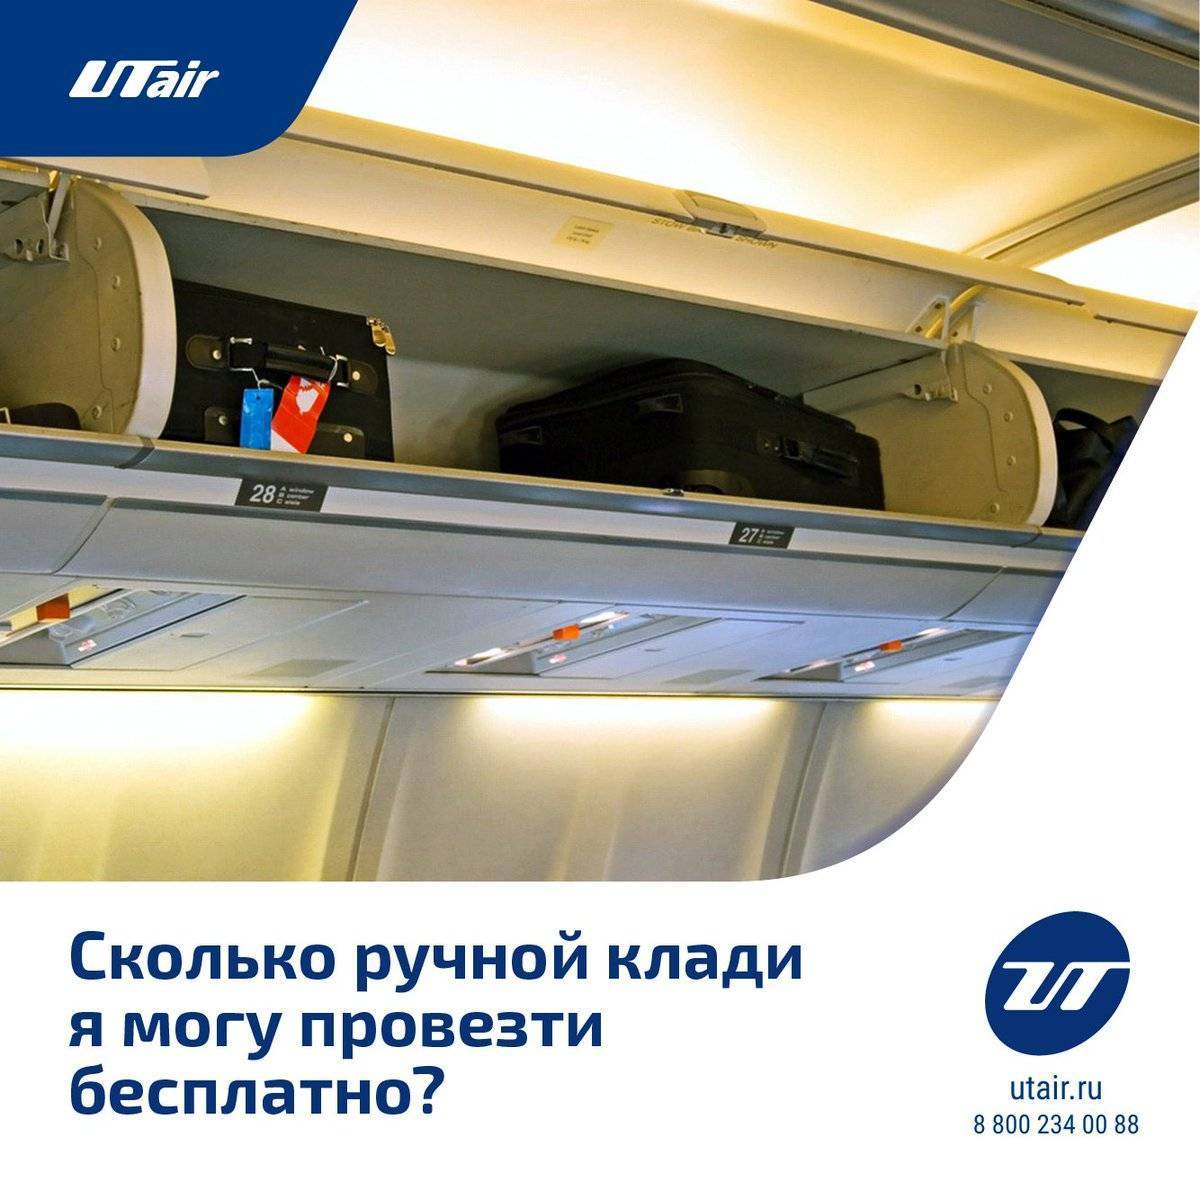 Провоз ручной клади и багажа в авиакомпании utair: размеры, вес, стоимость перевеса